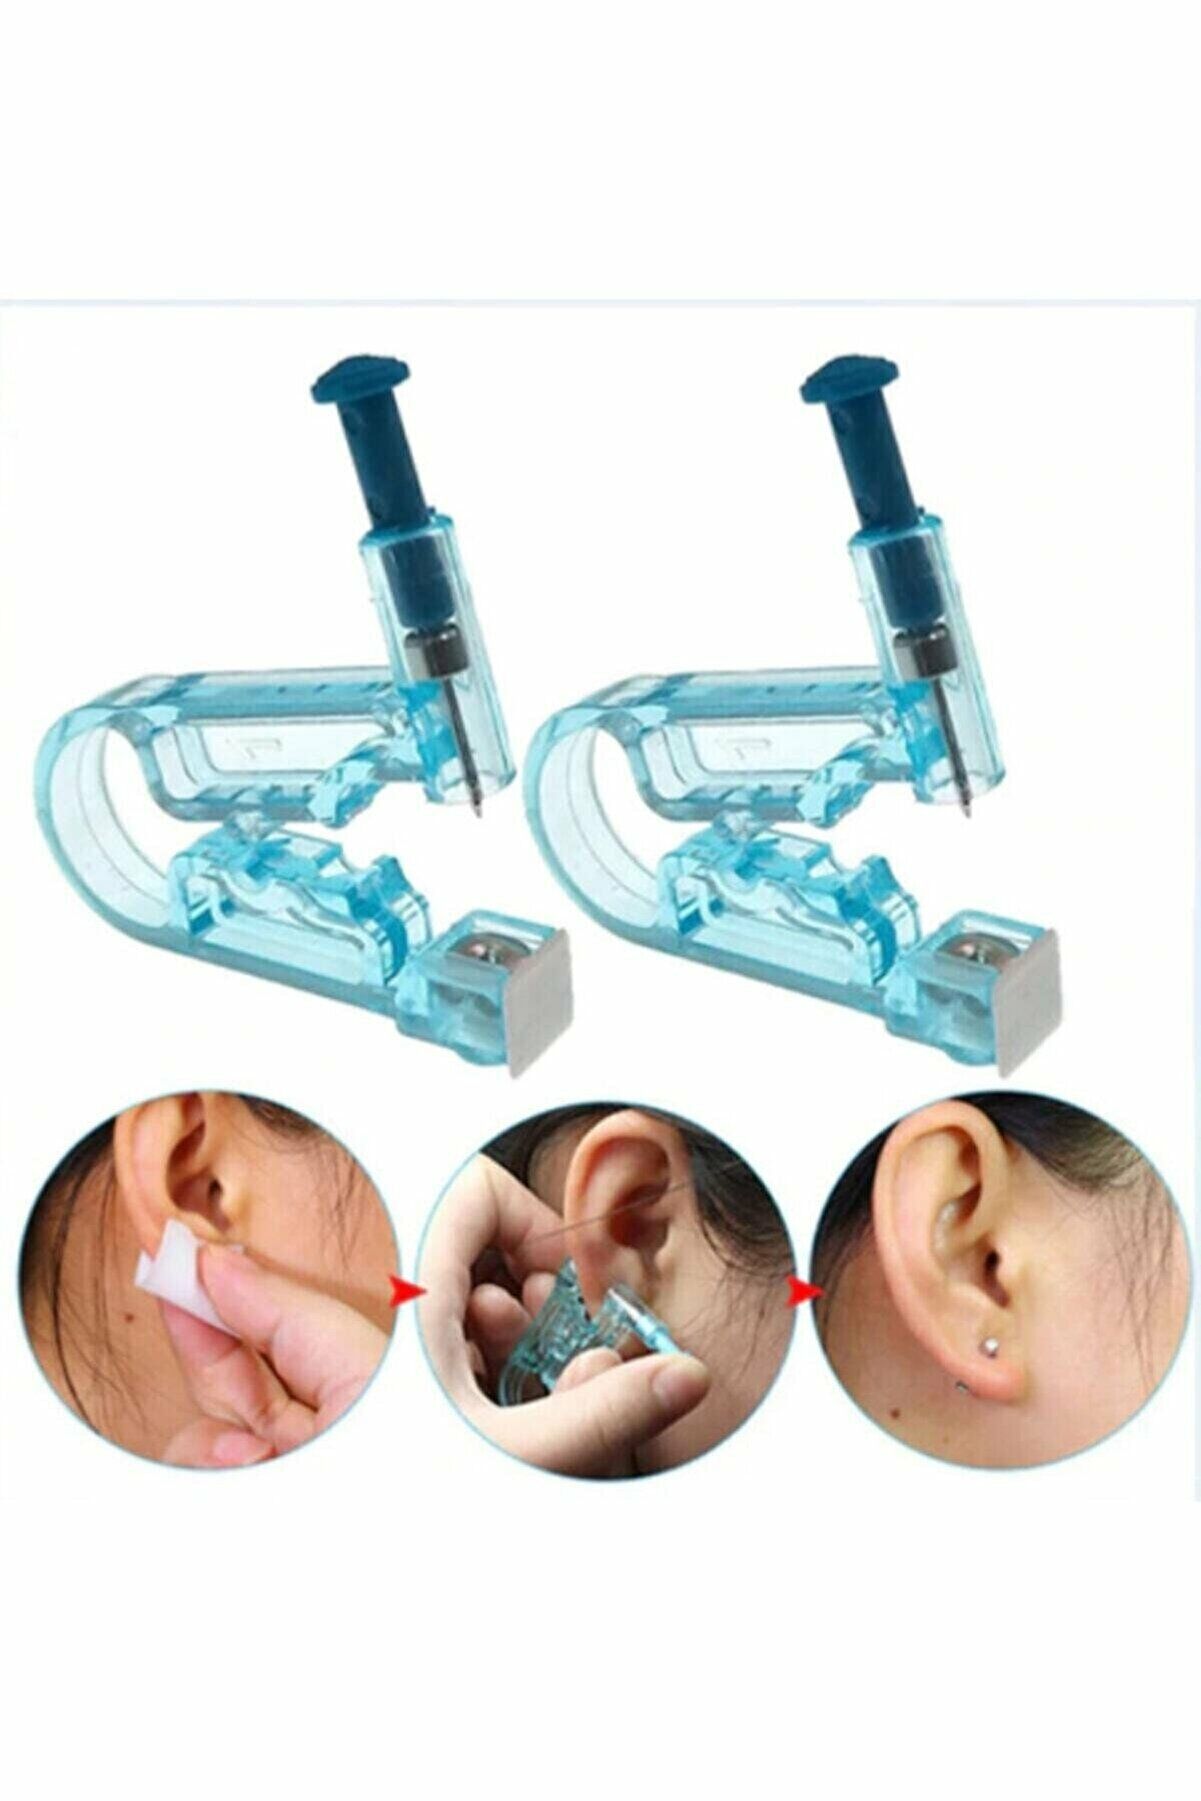 GökkuşağıTicaret Tek Kullanımlık Kulak Delme Aparatı Piercing Küpe Tabancası Hijyenik Kulak Delme Kiti